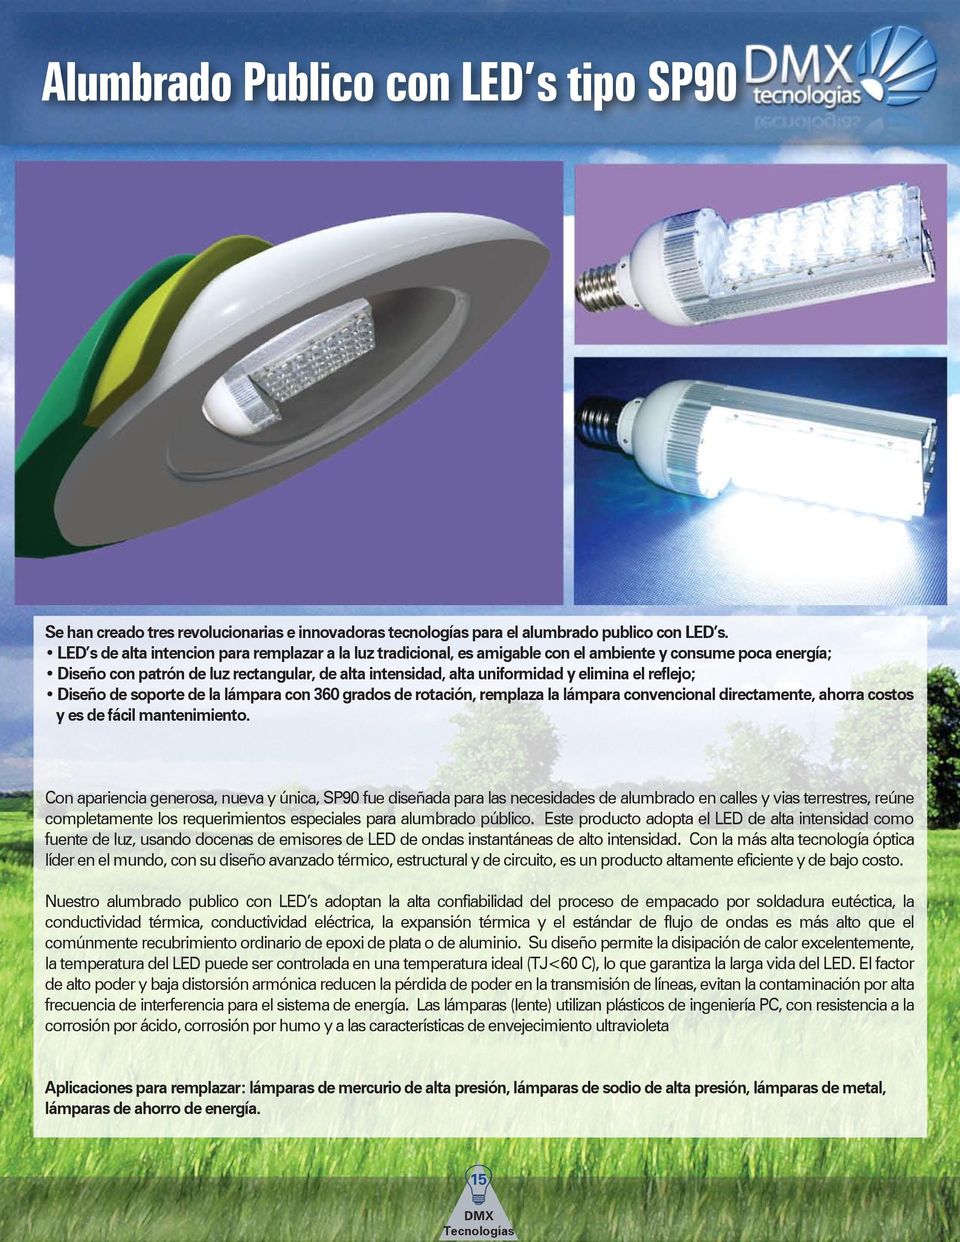 el reflejo; Diseño de soporte de la lámpara con 360 grados de rotación, remplaza la lámpara convencional directamente, ahorra costos y es de fácil mantenimiento.